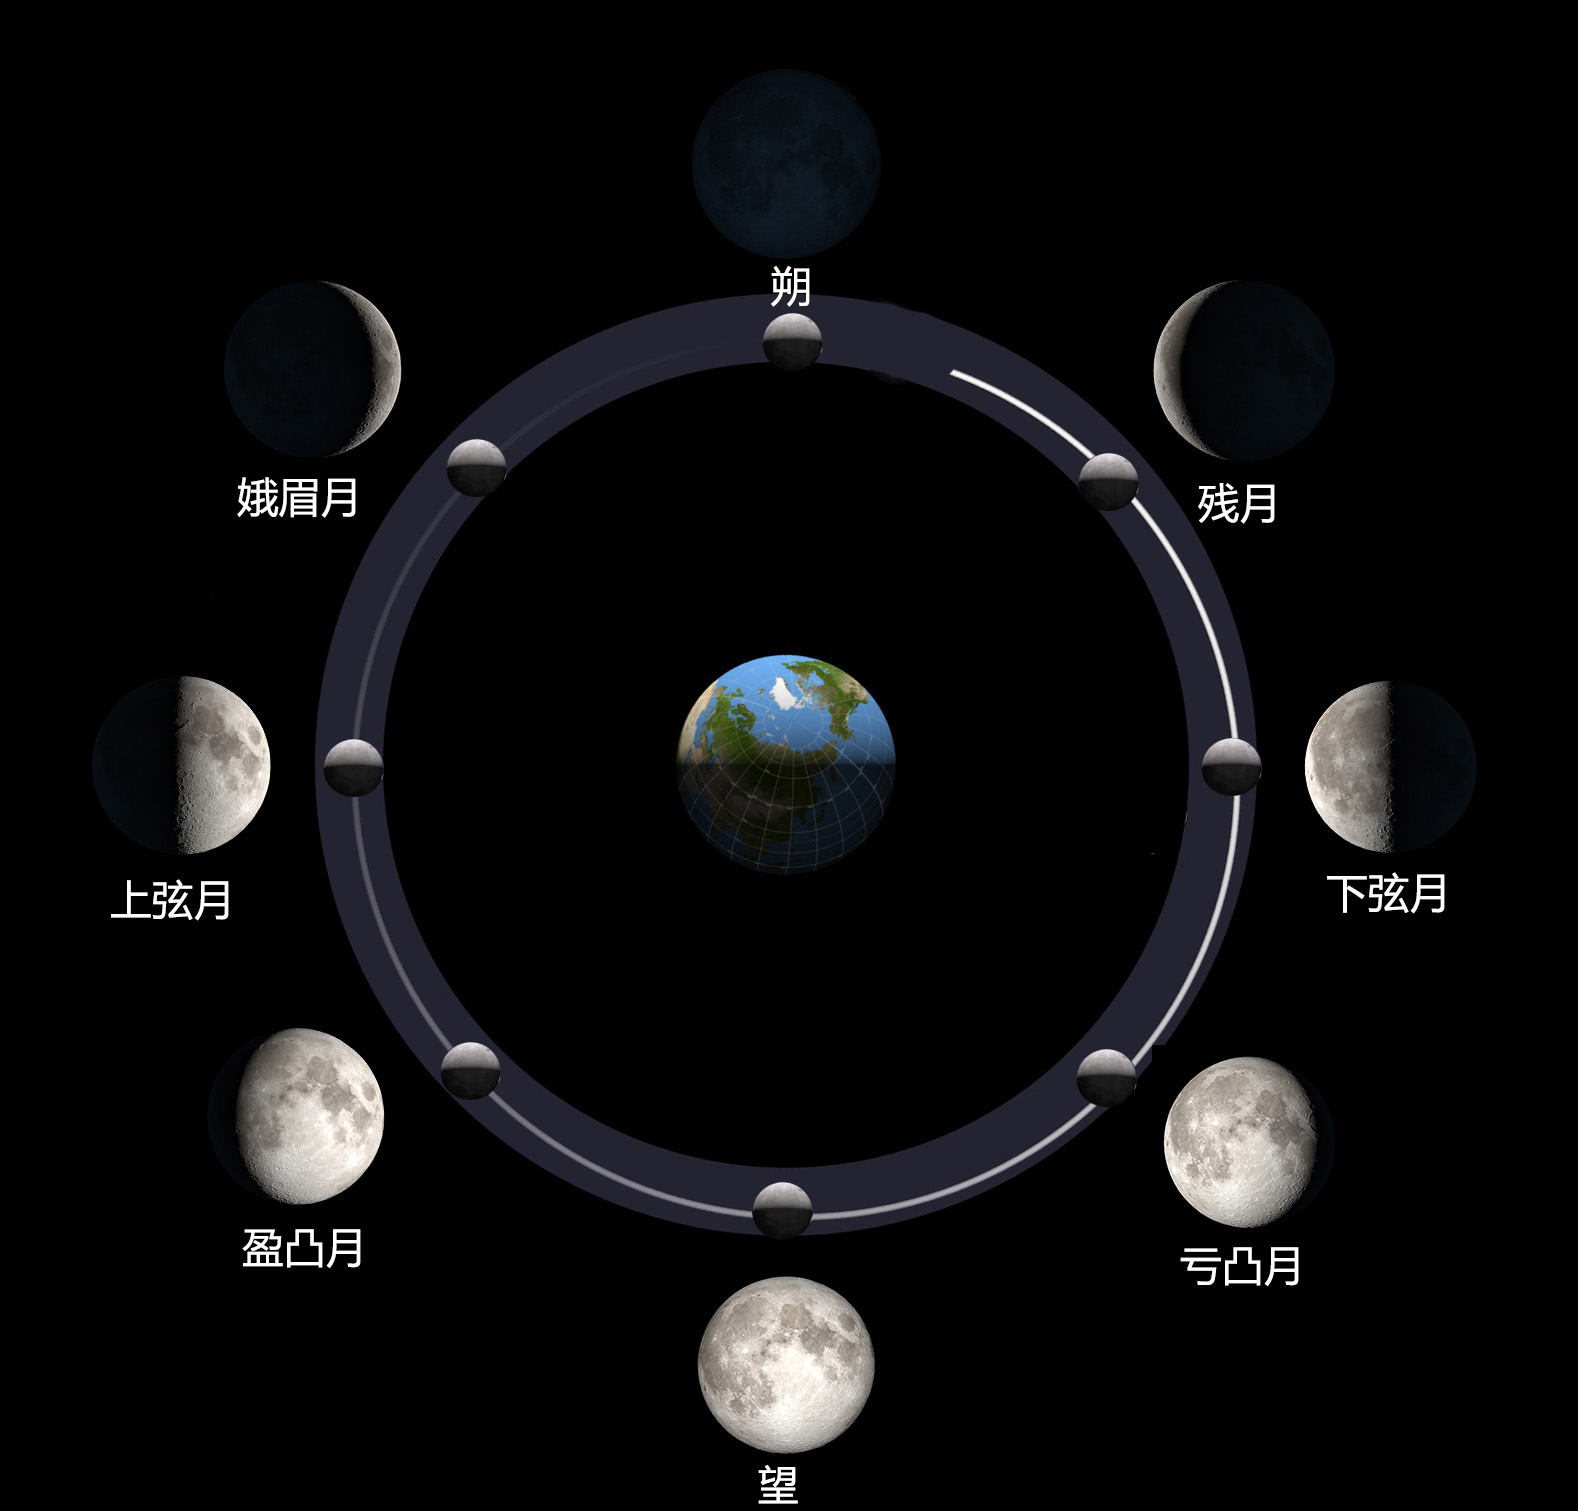 为什么会爱上月球摄影 月相变化,是随着月球公转而连续变化的,月球